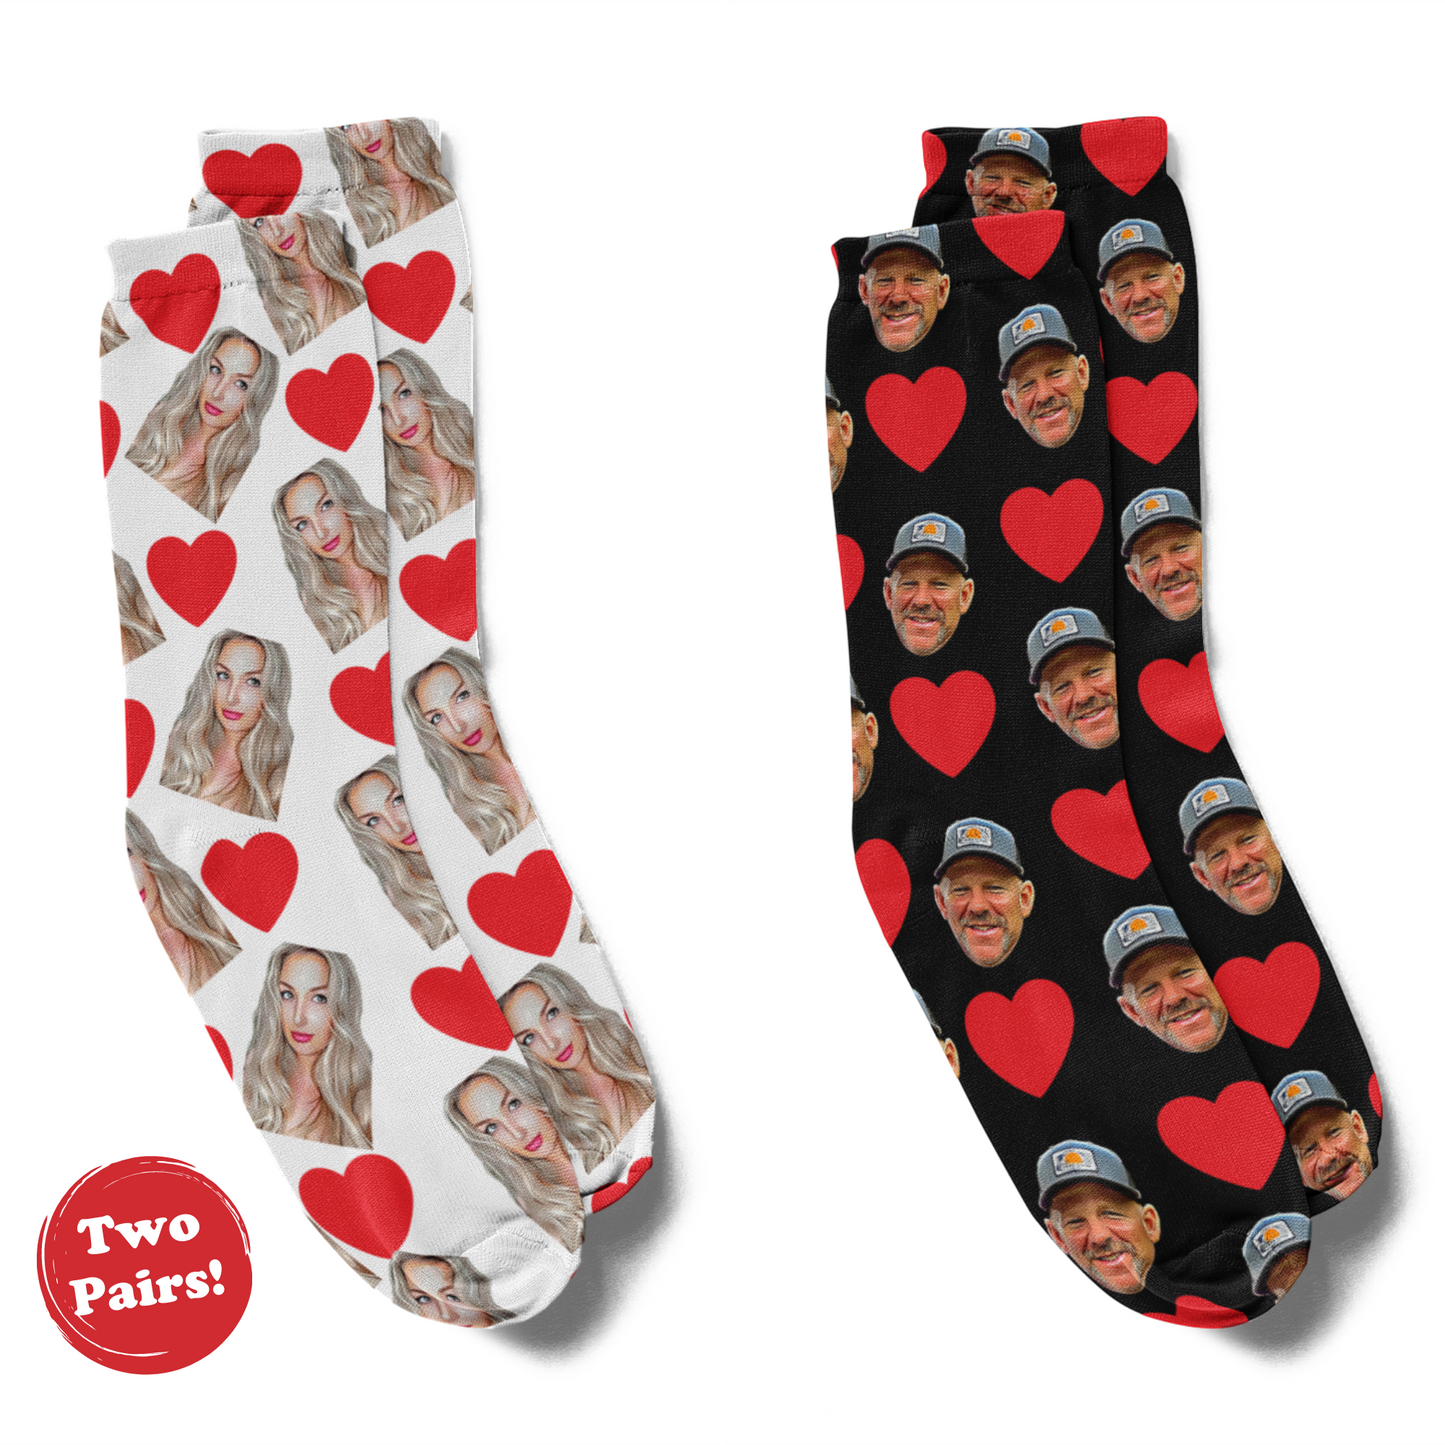 Socks - Heart socks for Him & Her